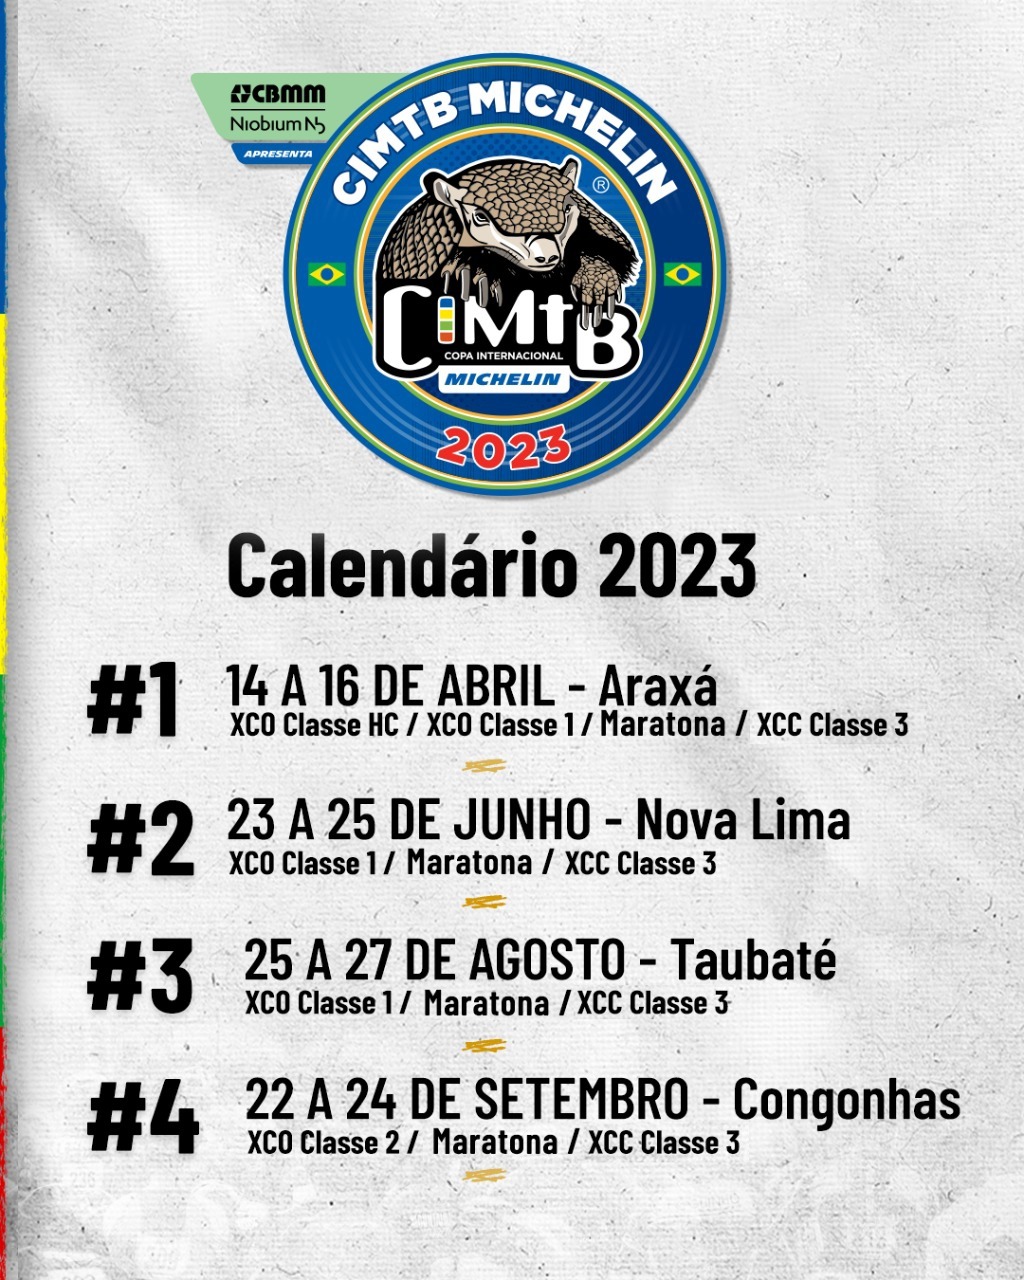 Calendário 2023 CIMTB – Copa Internacional de Mountain bike